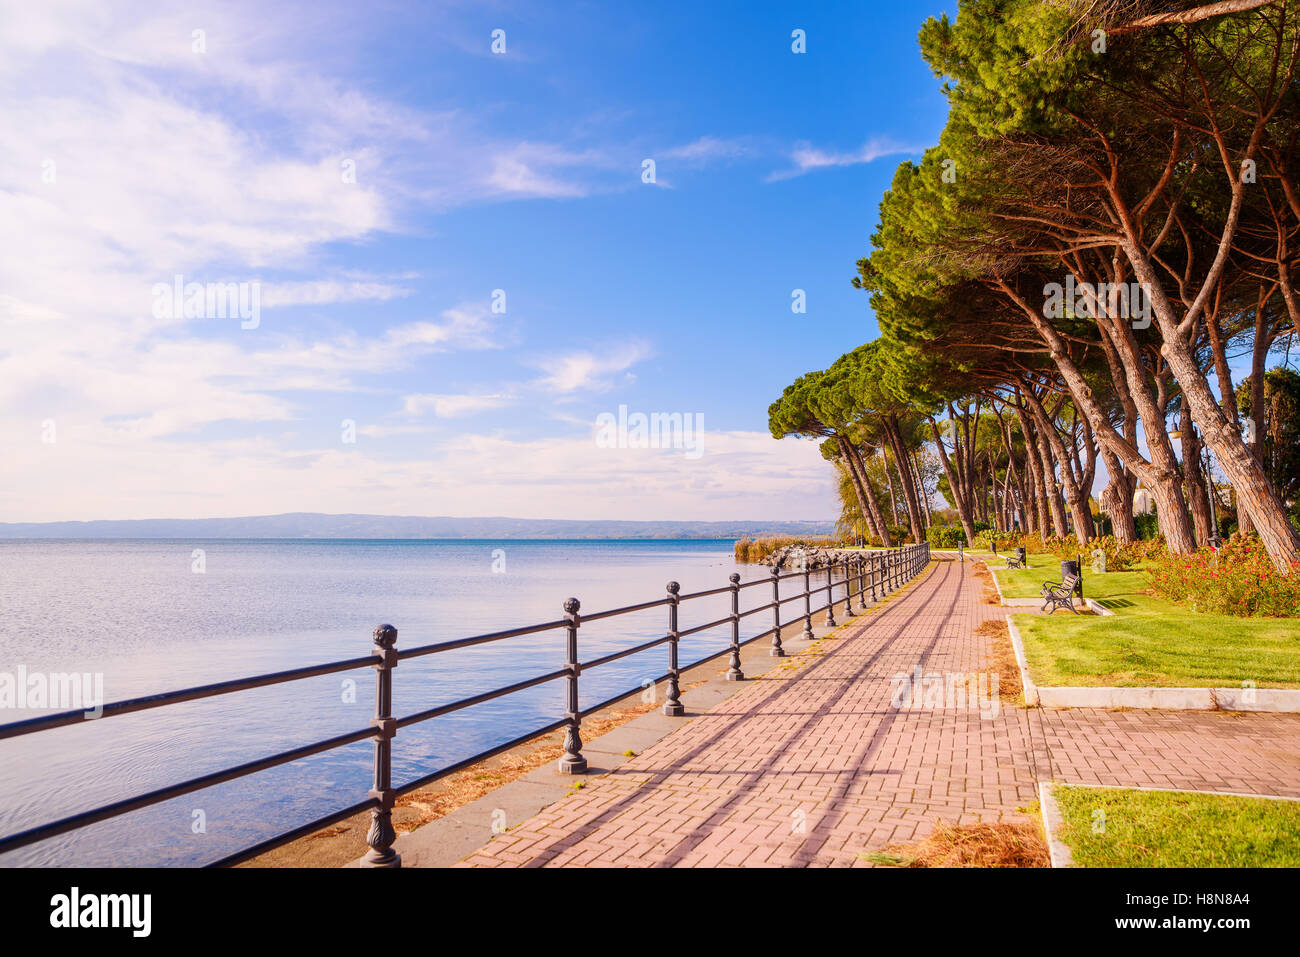 Paseo marítimo o Esplanade y pinos en lago de Bolsena, Italia. Foto de stock